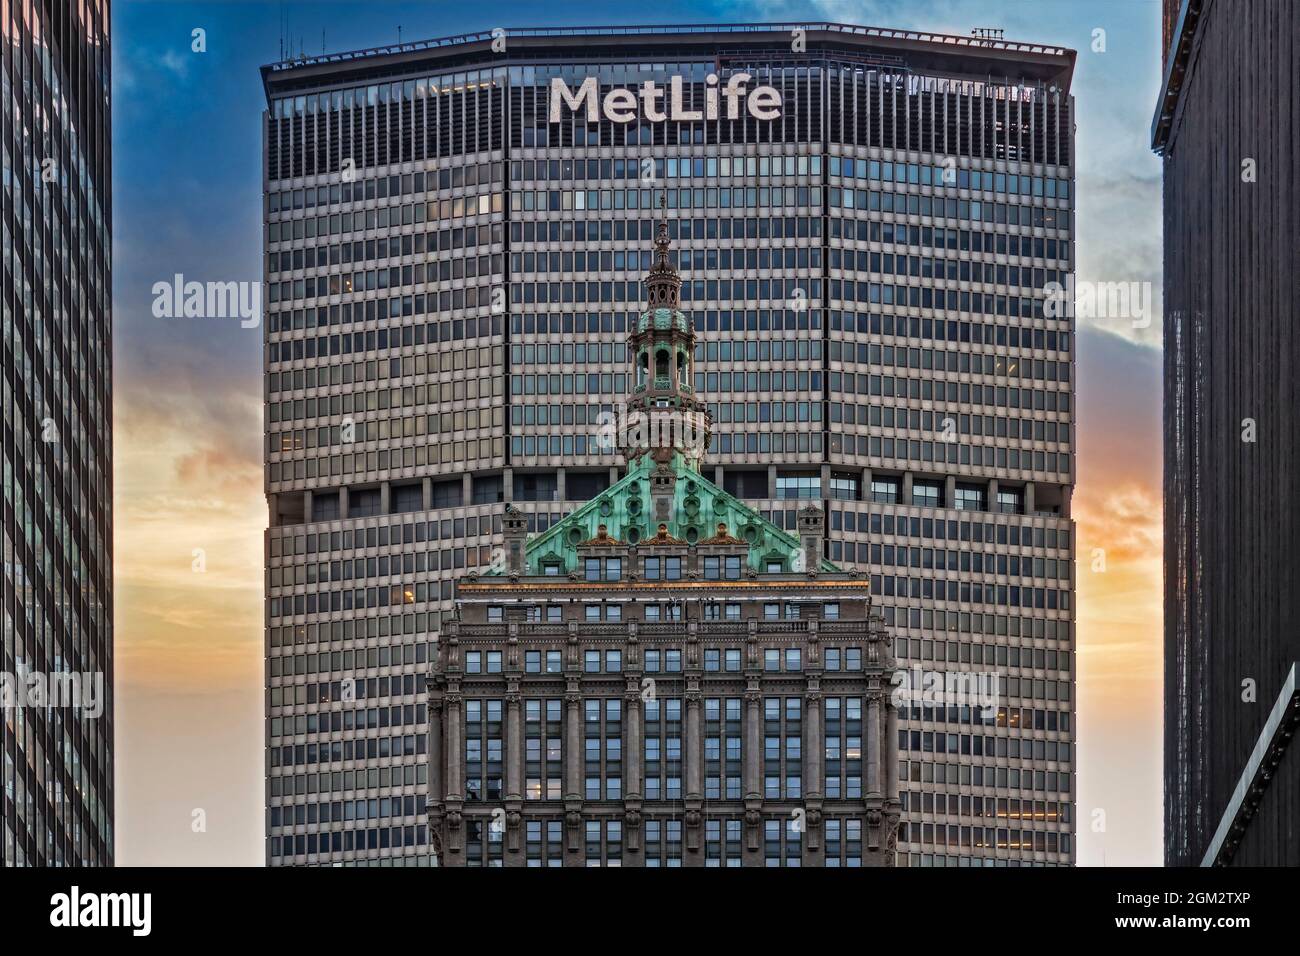 Hemsley e Met Life Building NYC - Vista della cupola ornata dell'iconico punto di riferimento di New York City. La parte superiore a forma piramidale dell'edificio Hemsley è Foto Stock